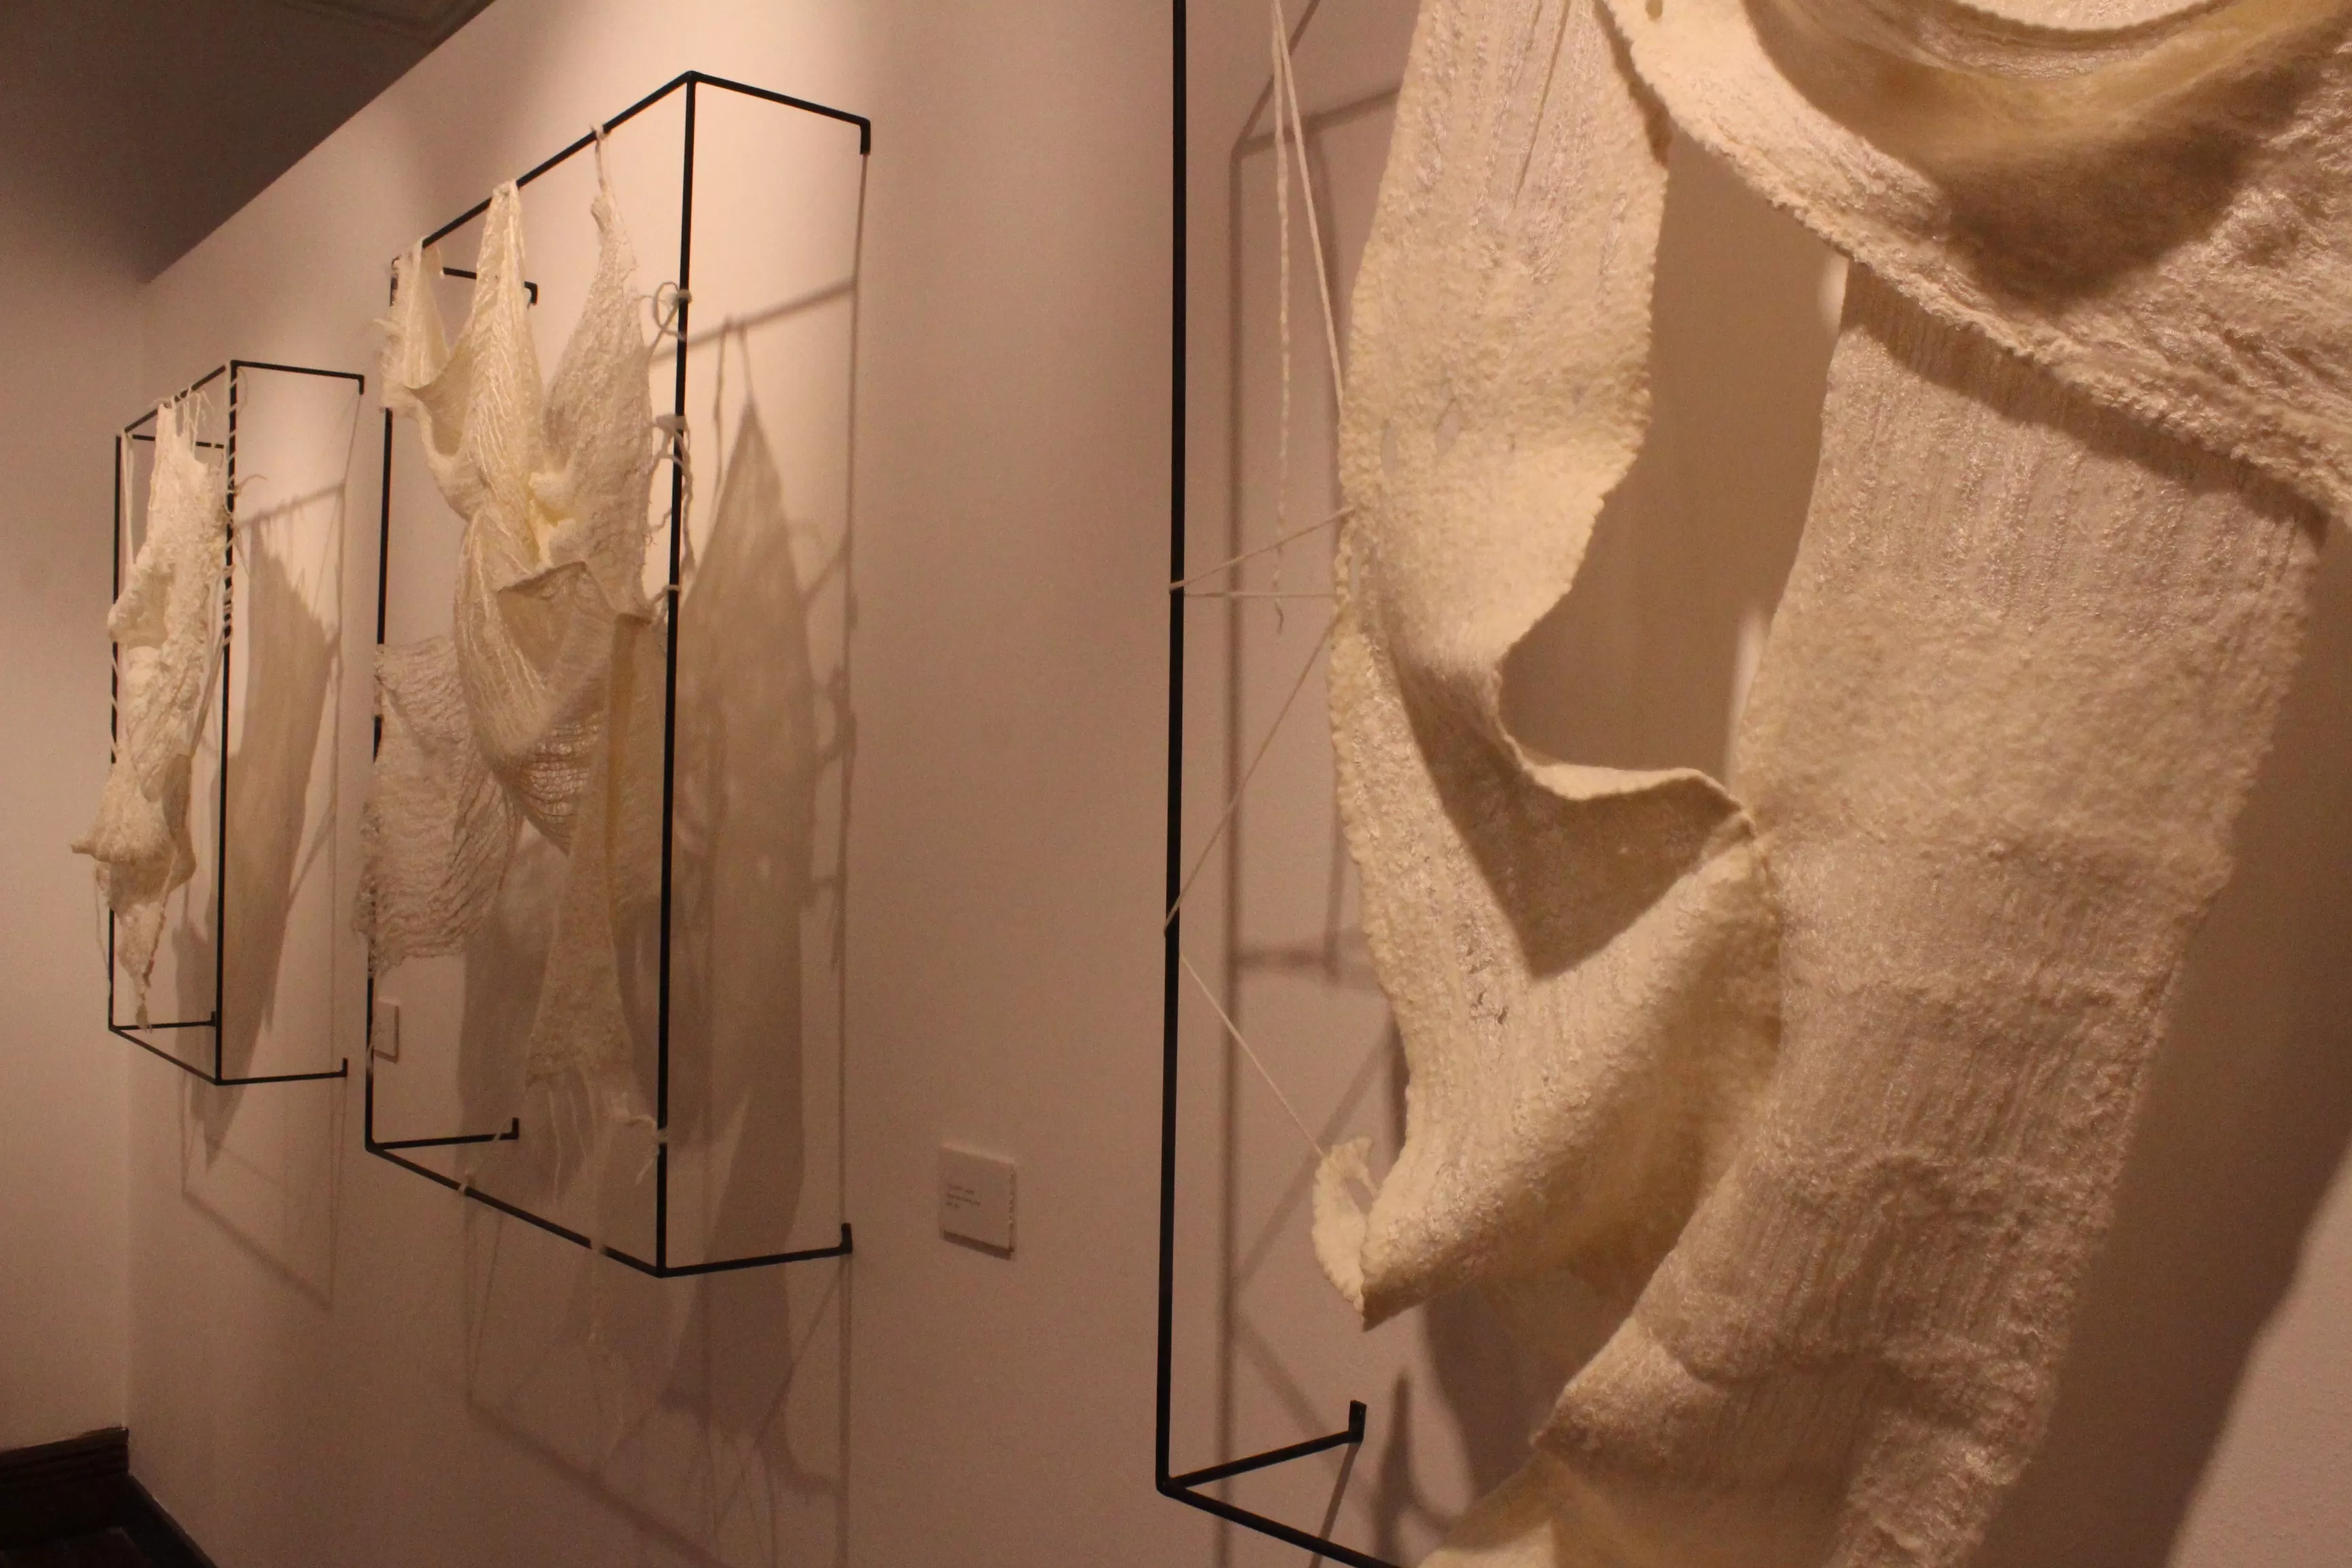 DEÜ Güzel Sanatlar Fakültesi Moda Giyim Tasarım Bölümü Tekstil Tasarımı Ana Sanat Dalı Öğretim Üyesi Doç. Dr. Neslihan Yaşar’ın “Koza’dan Doku(ma)ya” isimli lif sanatı sergisi açıldı